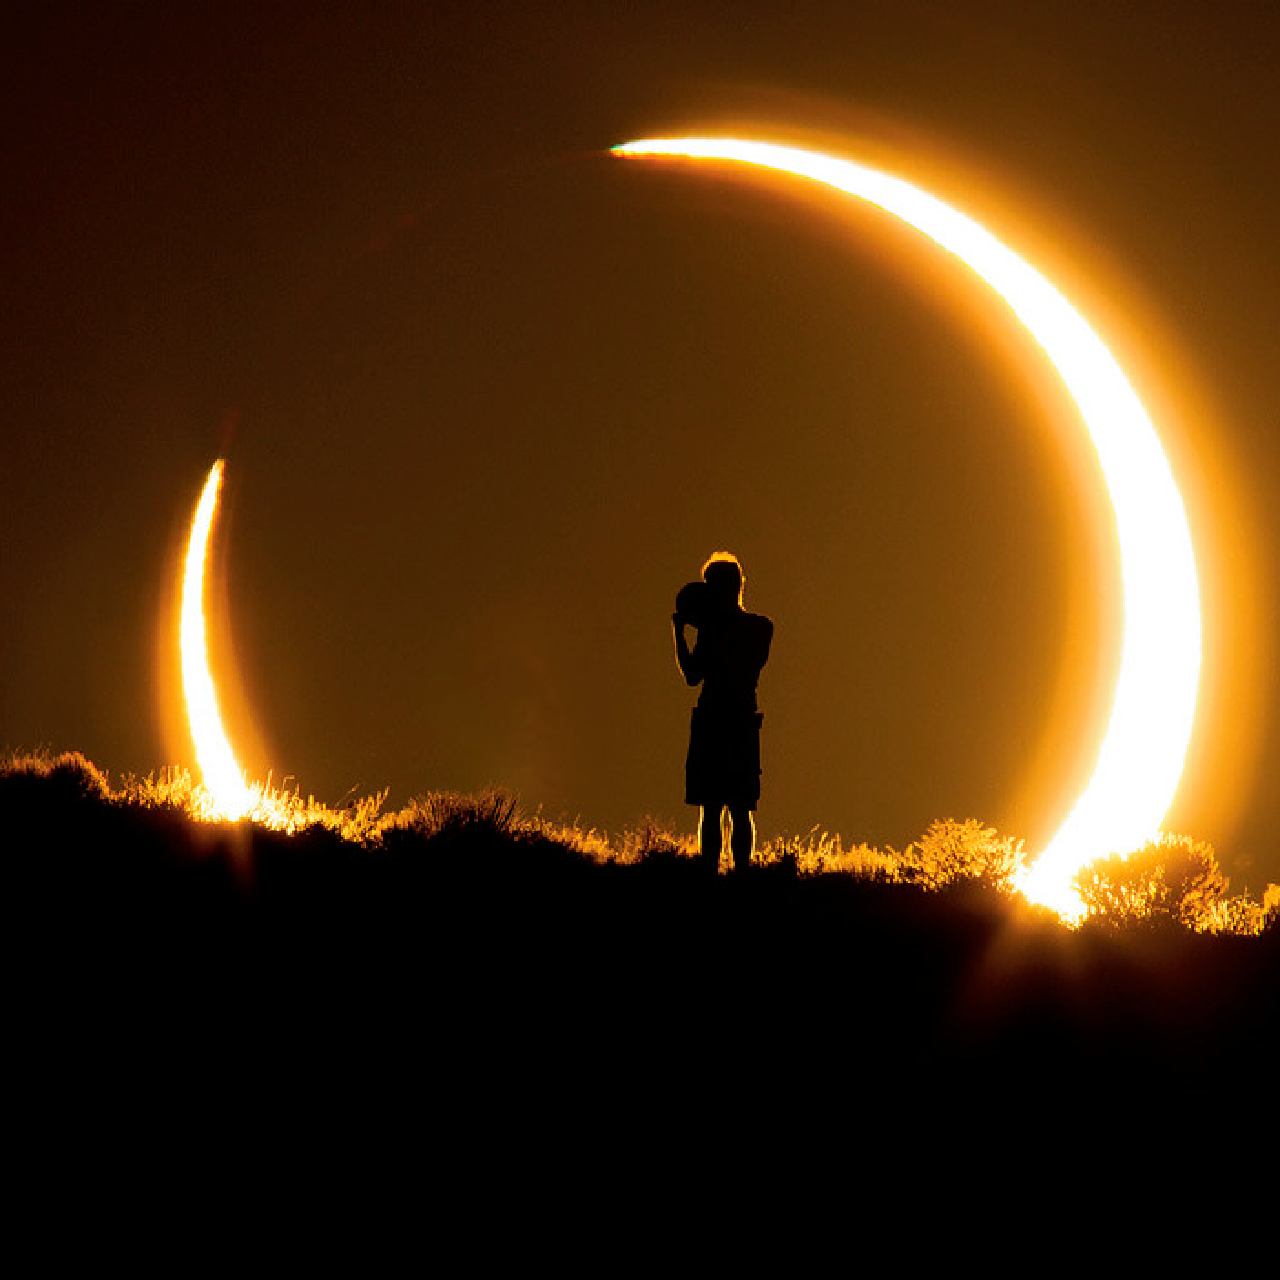 Calendario de eclipses solares y lunares: ¡No te pierdas las próximas fechas!